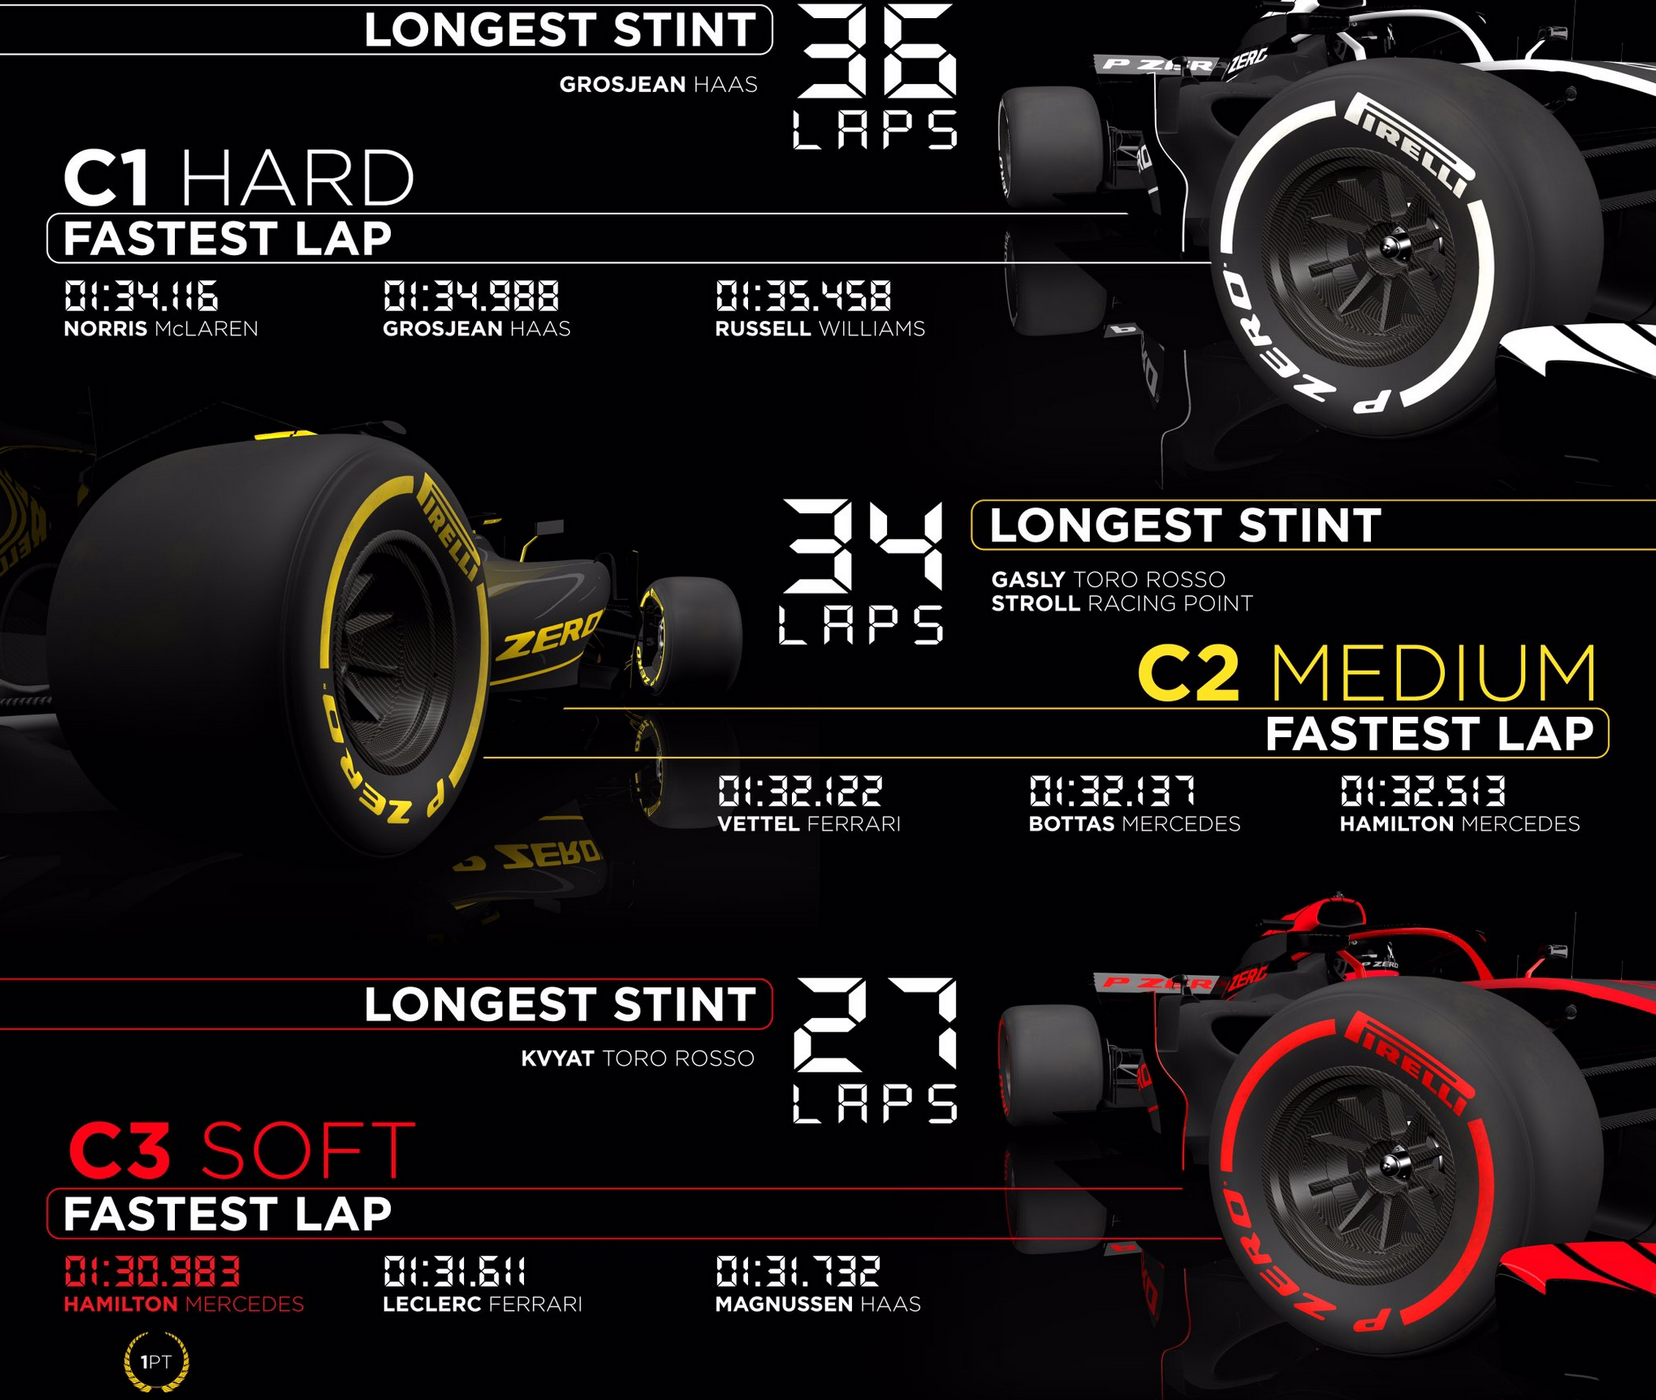 Přehled nejrychlejších kol podle použitých směsí pneumatik a nejdelší stinty